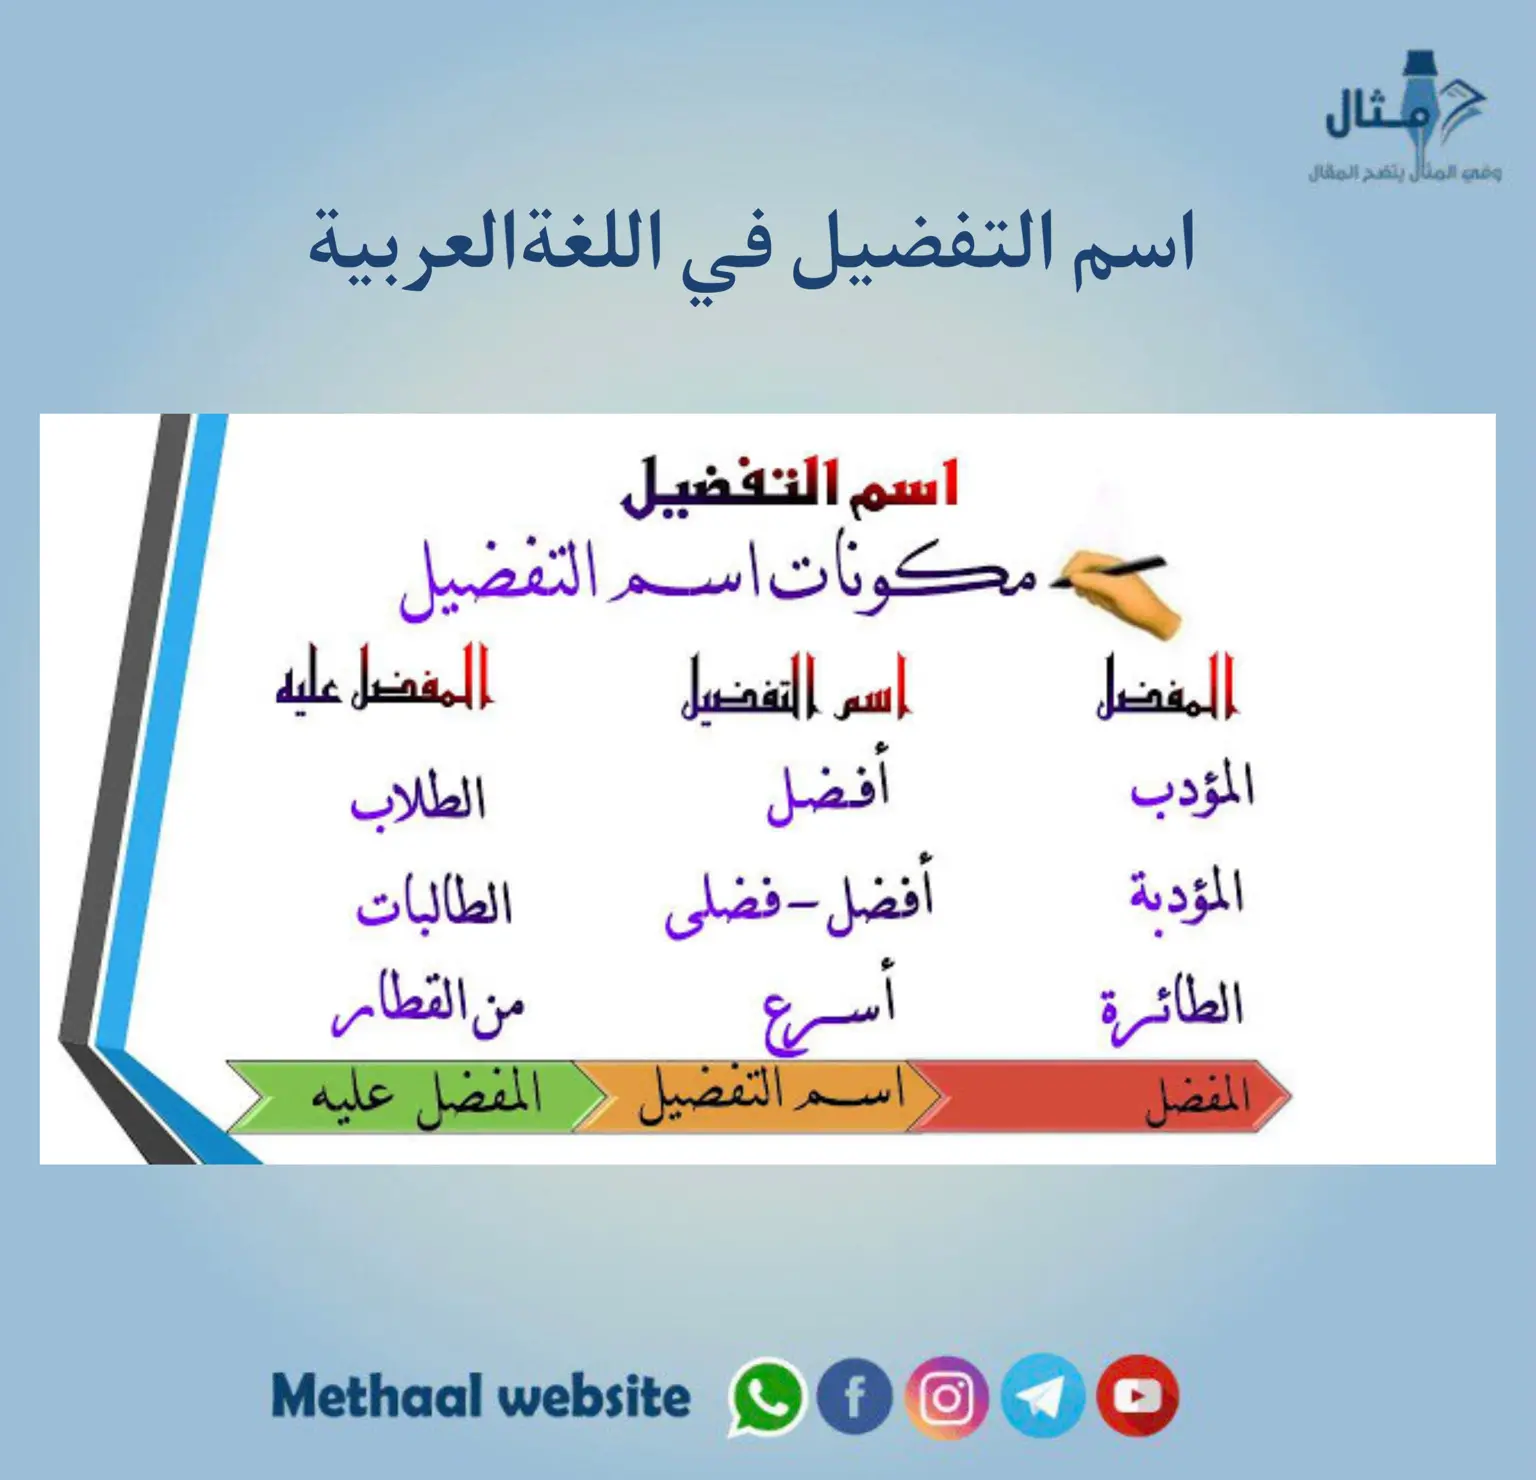 اسم التفضيل في اللغةالعربية 